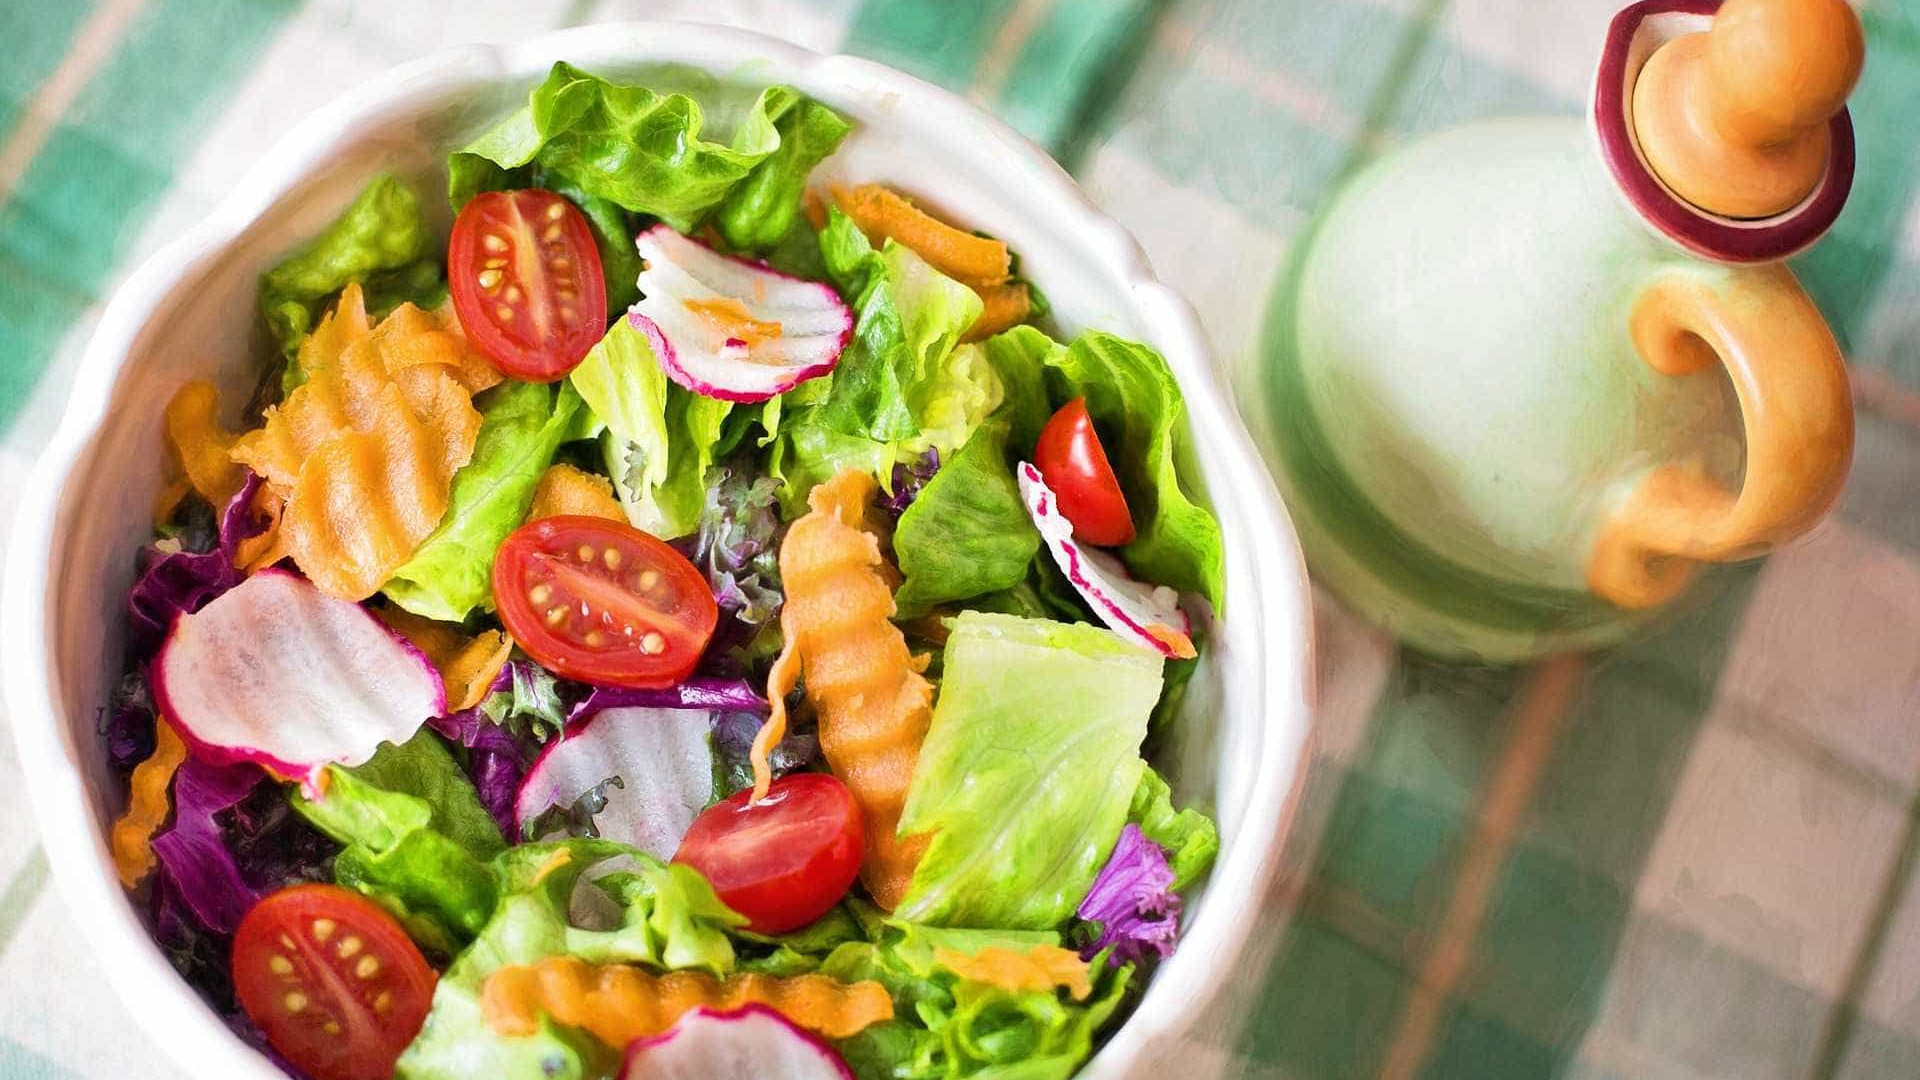 Pesquisa revela contaminação em 90% das saladas prontas para consumo